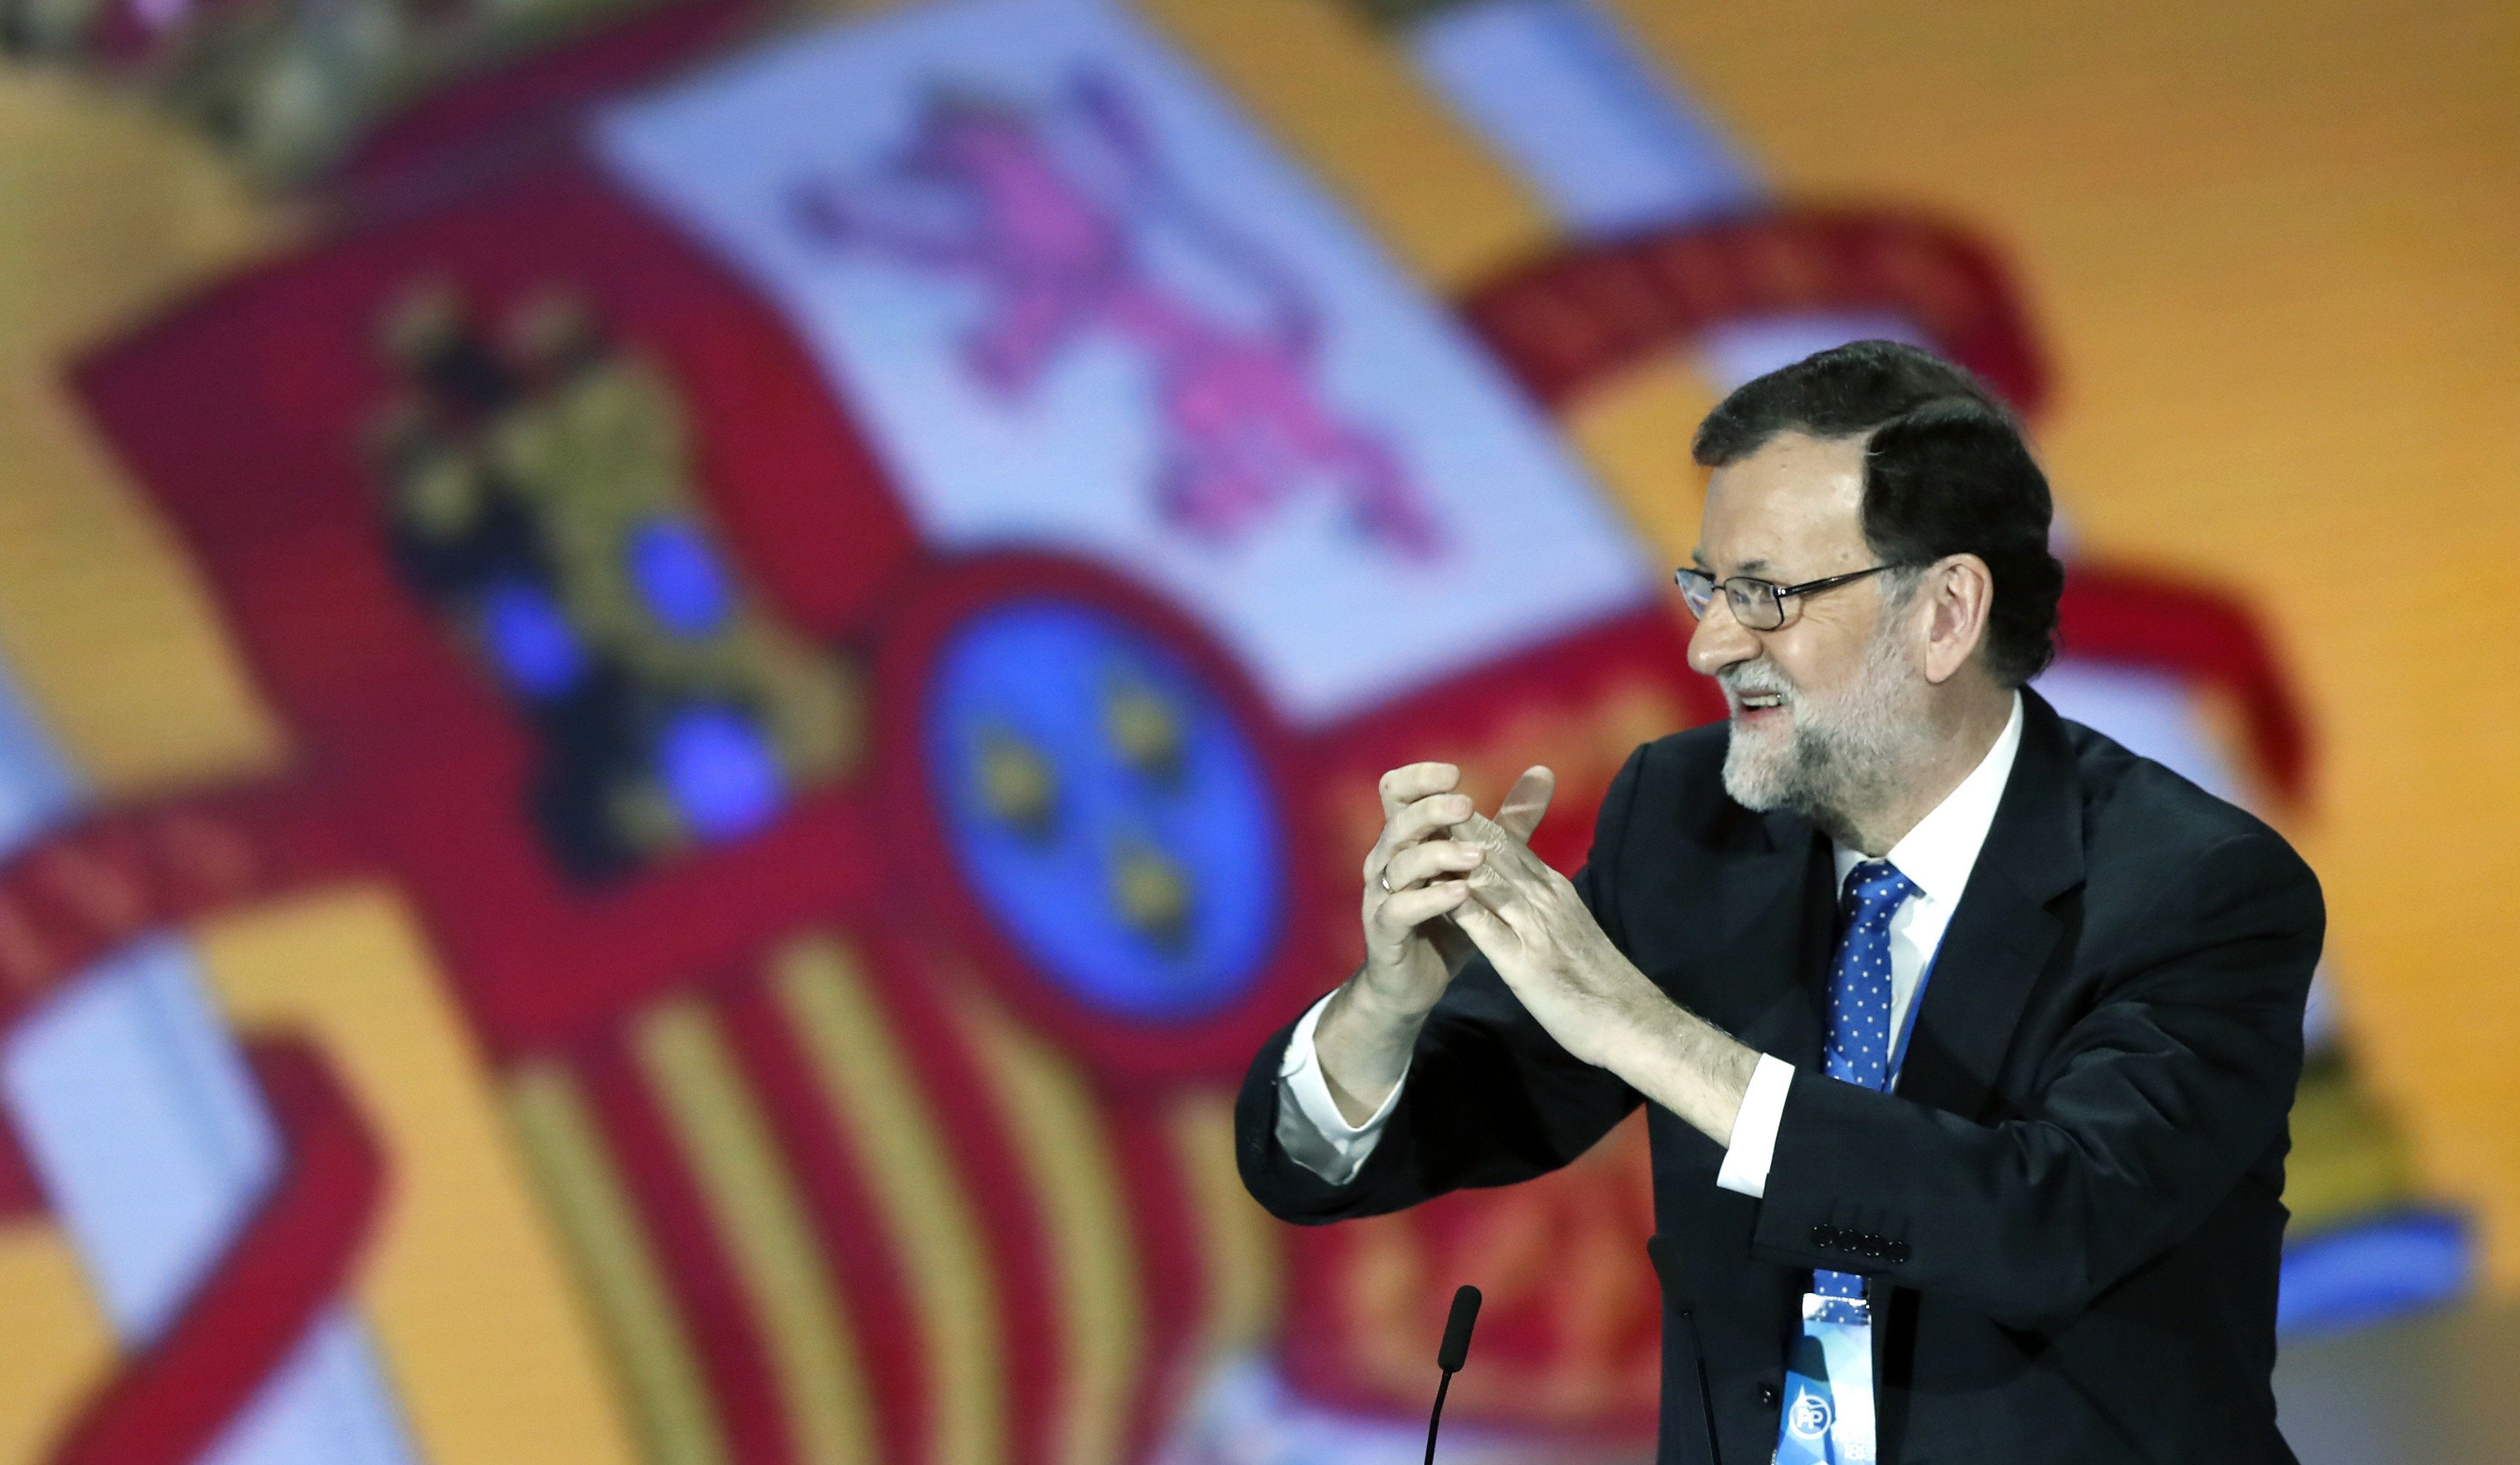 Rajoy avisa que la independencia sería "una amputación terrible y dolorosa, sin salvación"